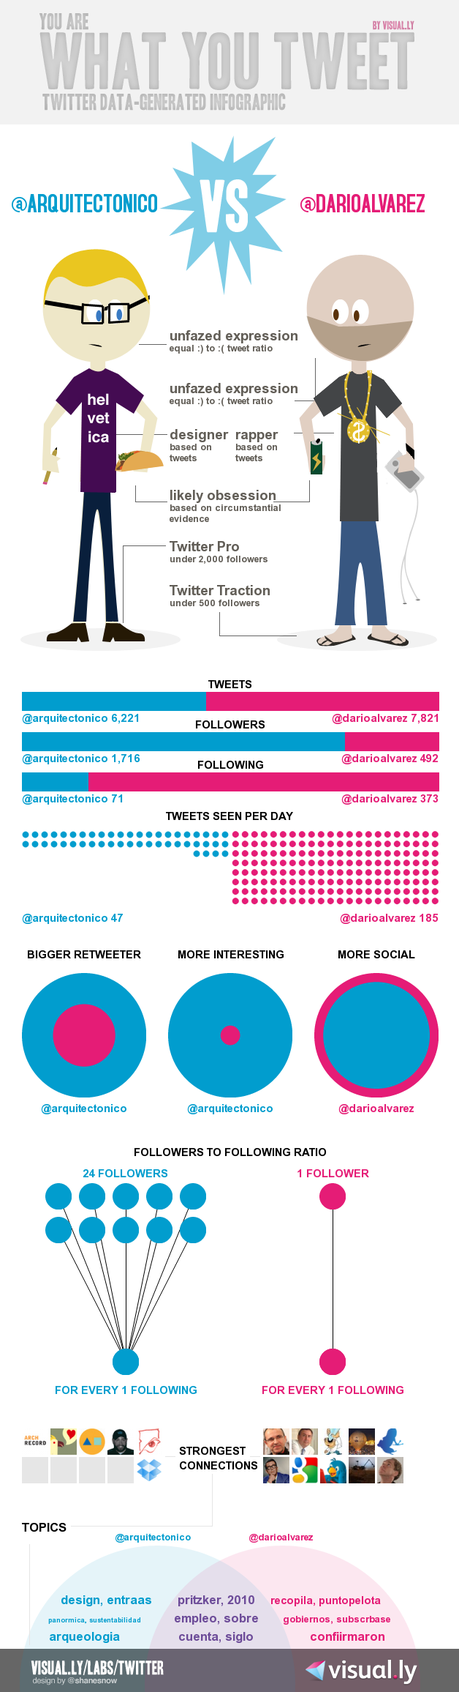 Infografía: visualiza fácilmente tu personalidad en Twitter (You are what you tweet by Visually)